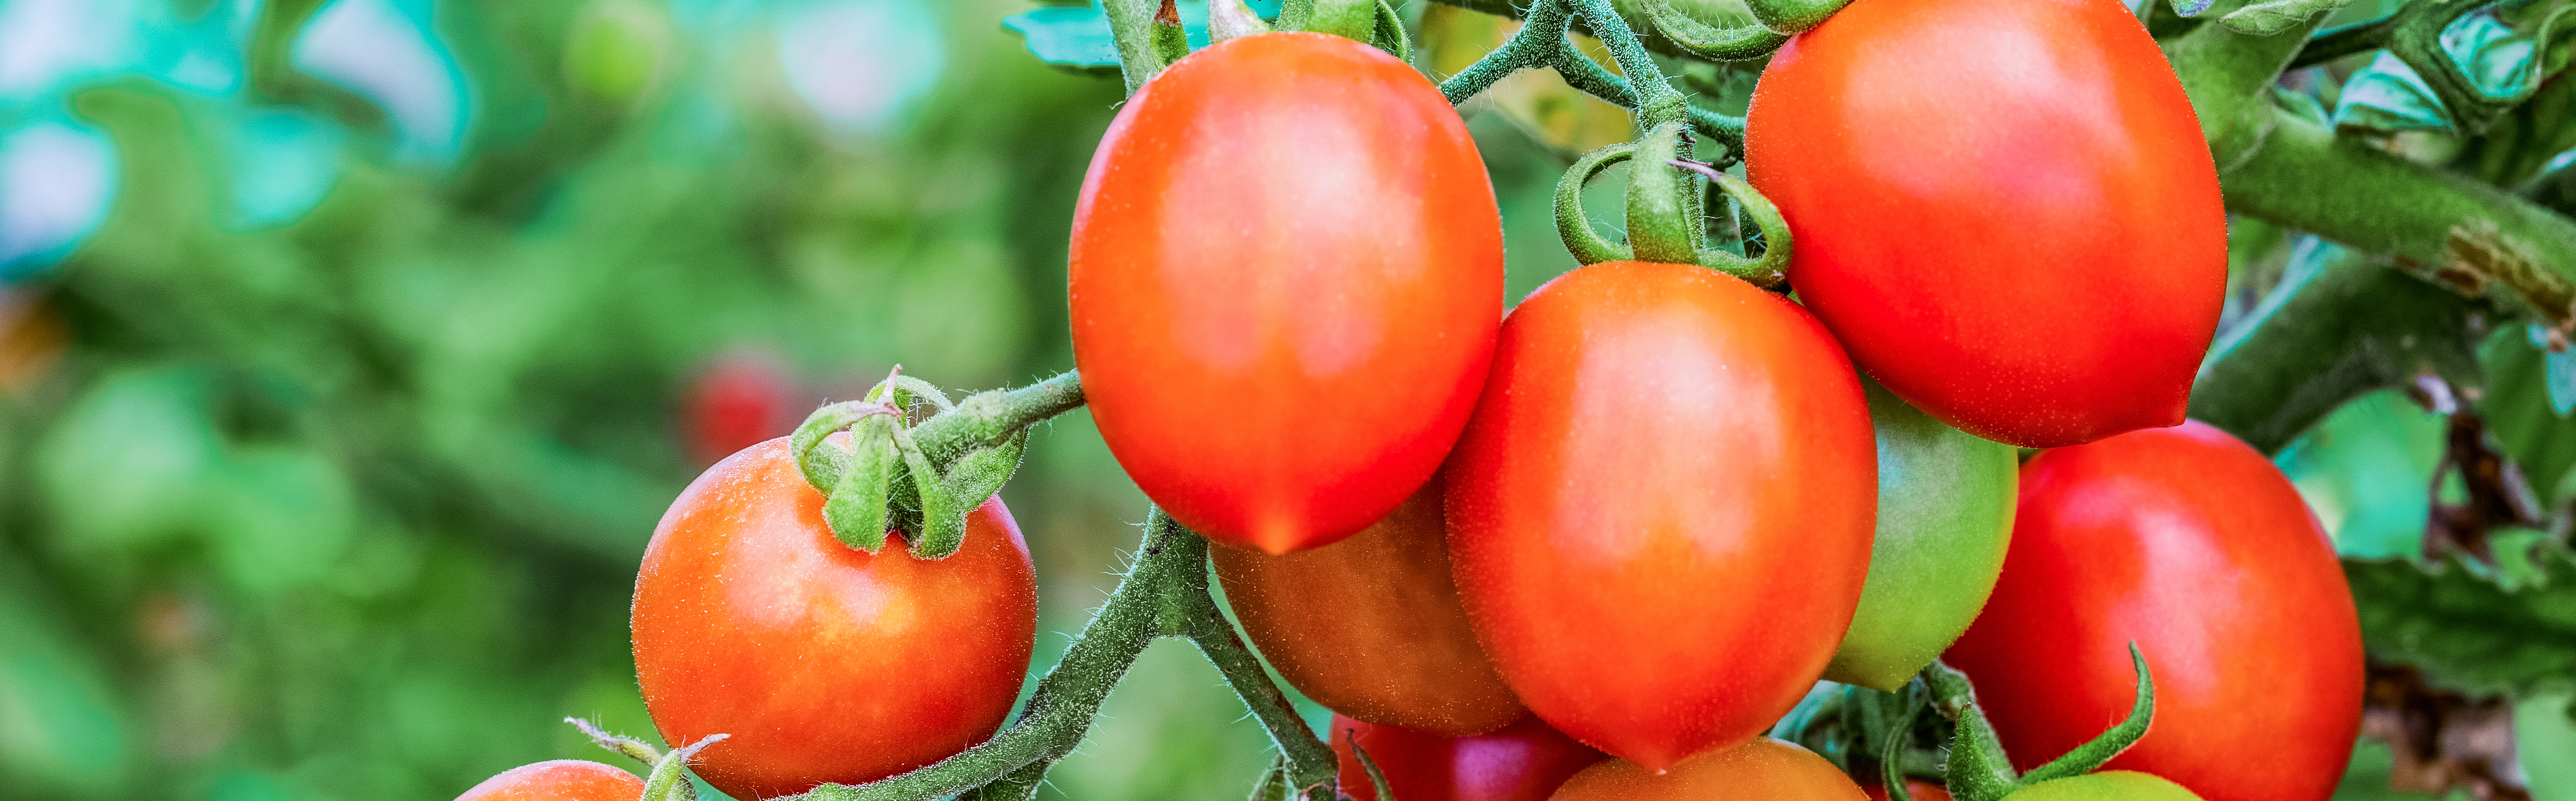 Wir bestimmen den Zuckergehalt in Tomaten mittels hyperspektraler Bildgebung.